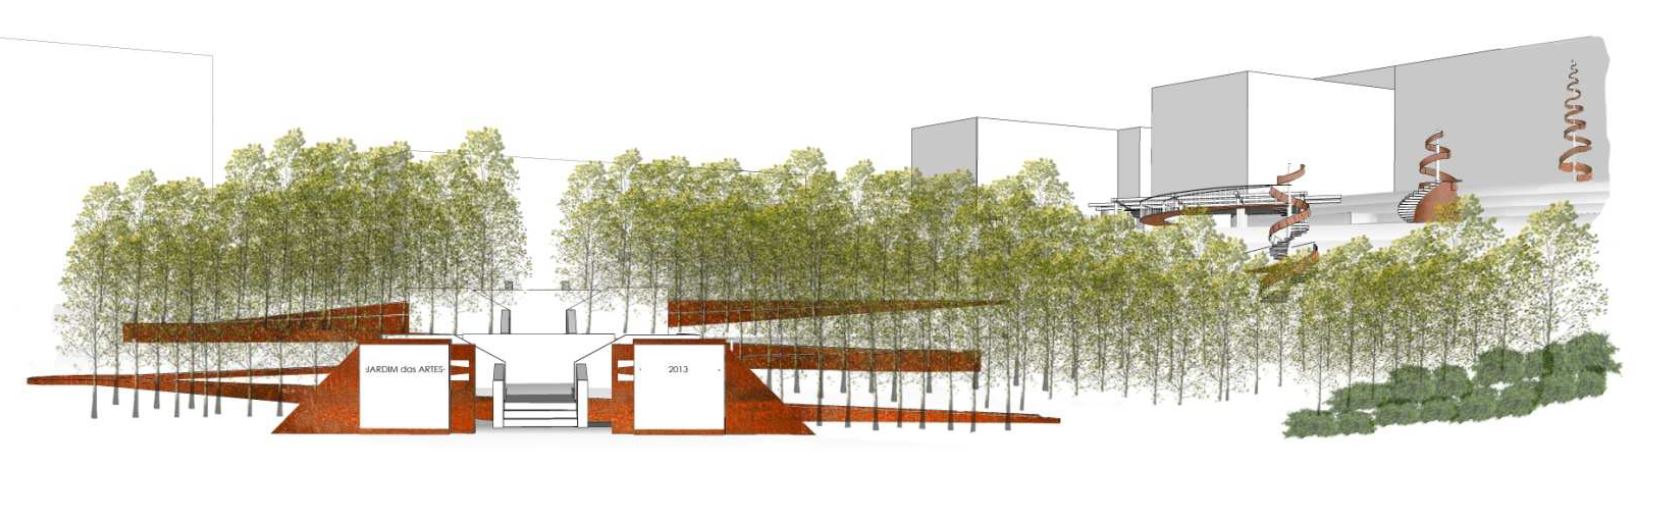 Covilhã: Câmara prevê investimento de 1 M€ no Jardim das Artes